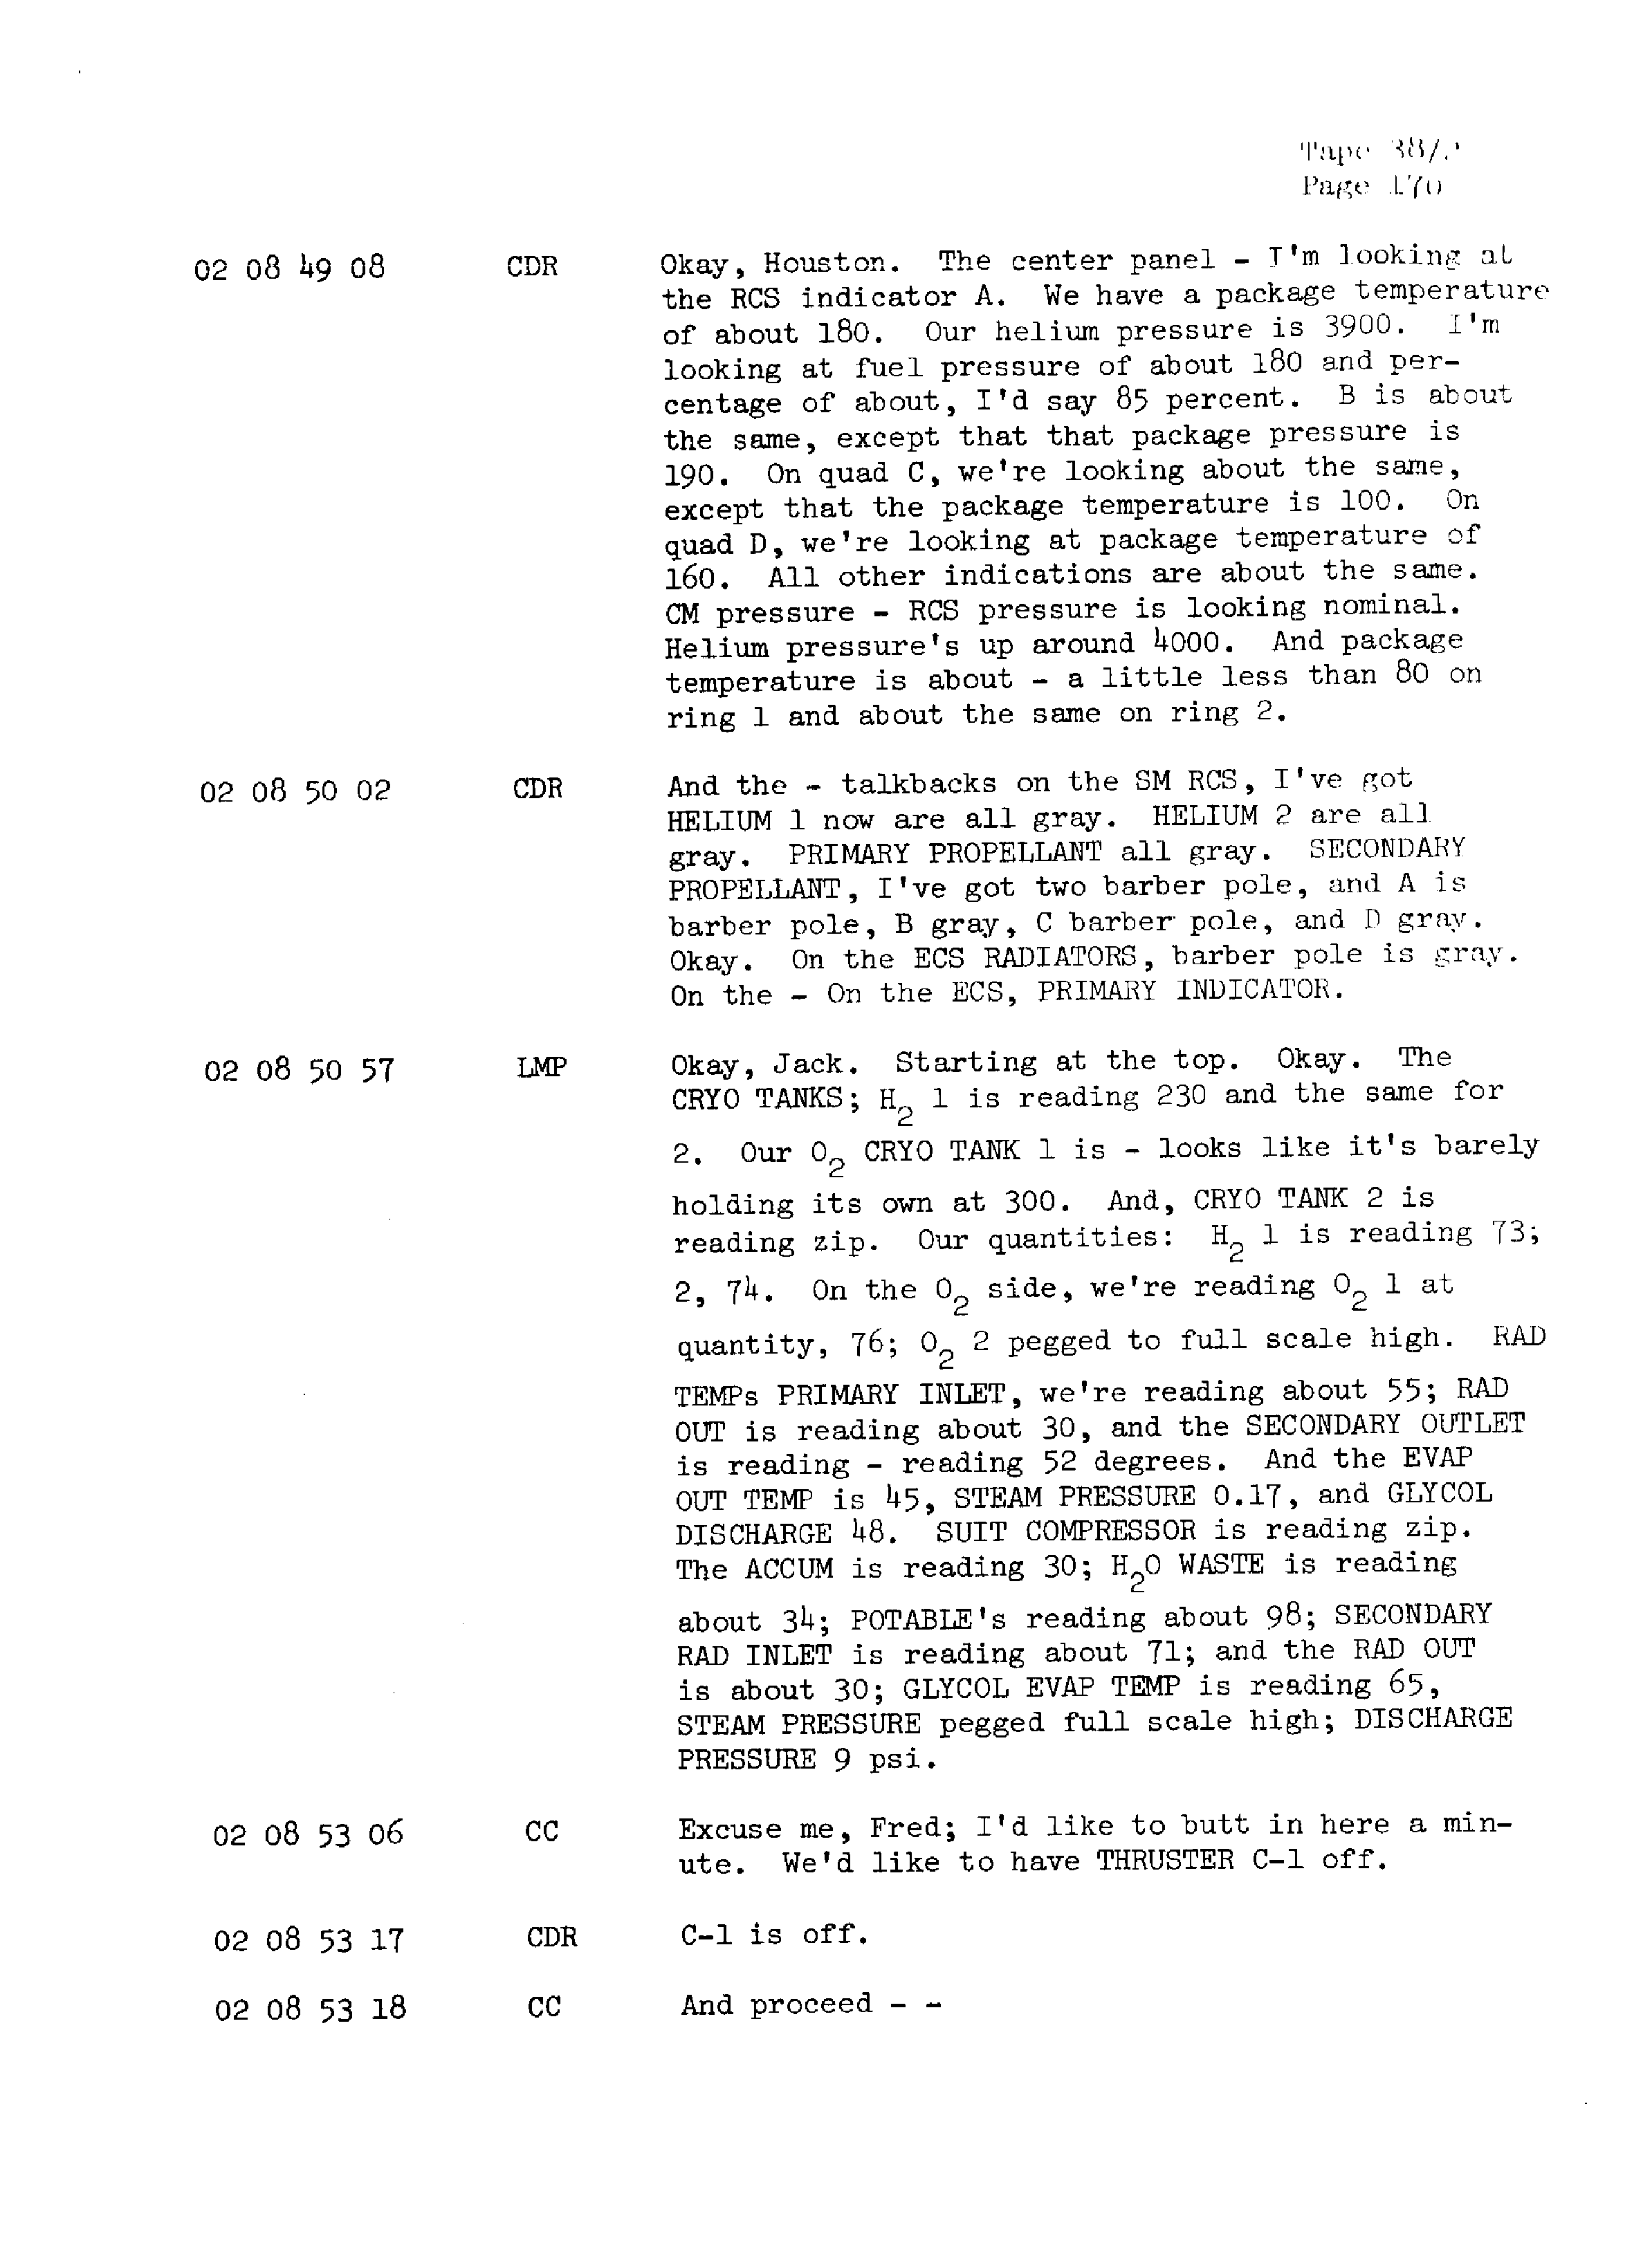 Page 177 of Apollo 13’s original transcript